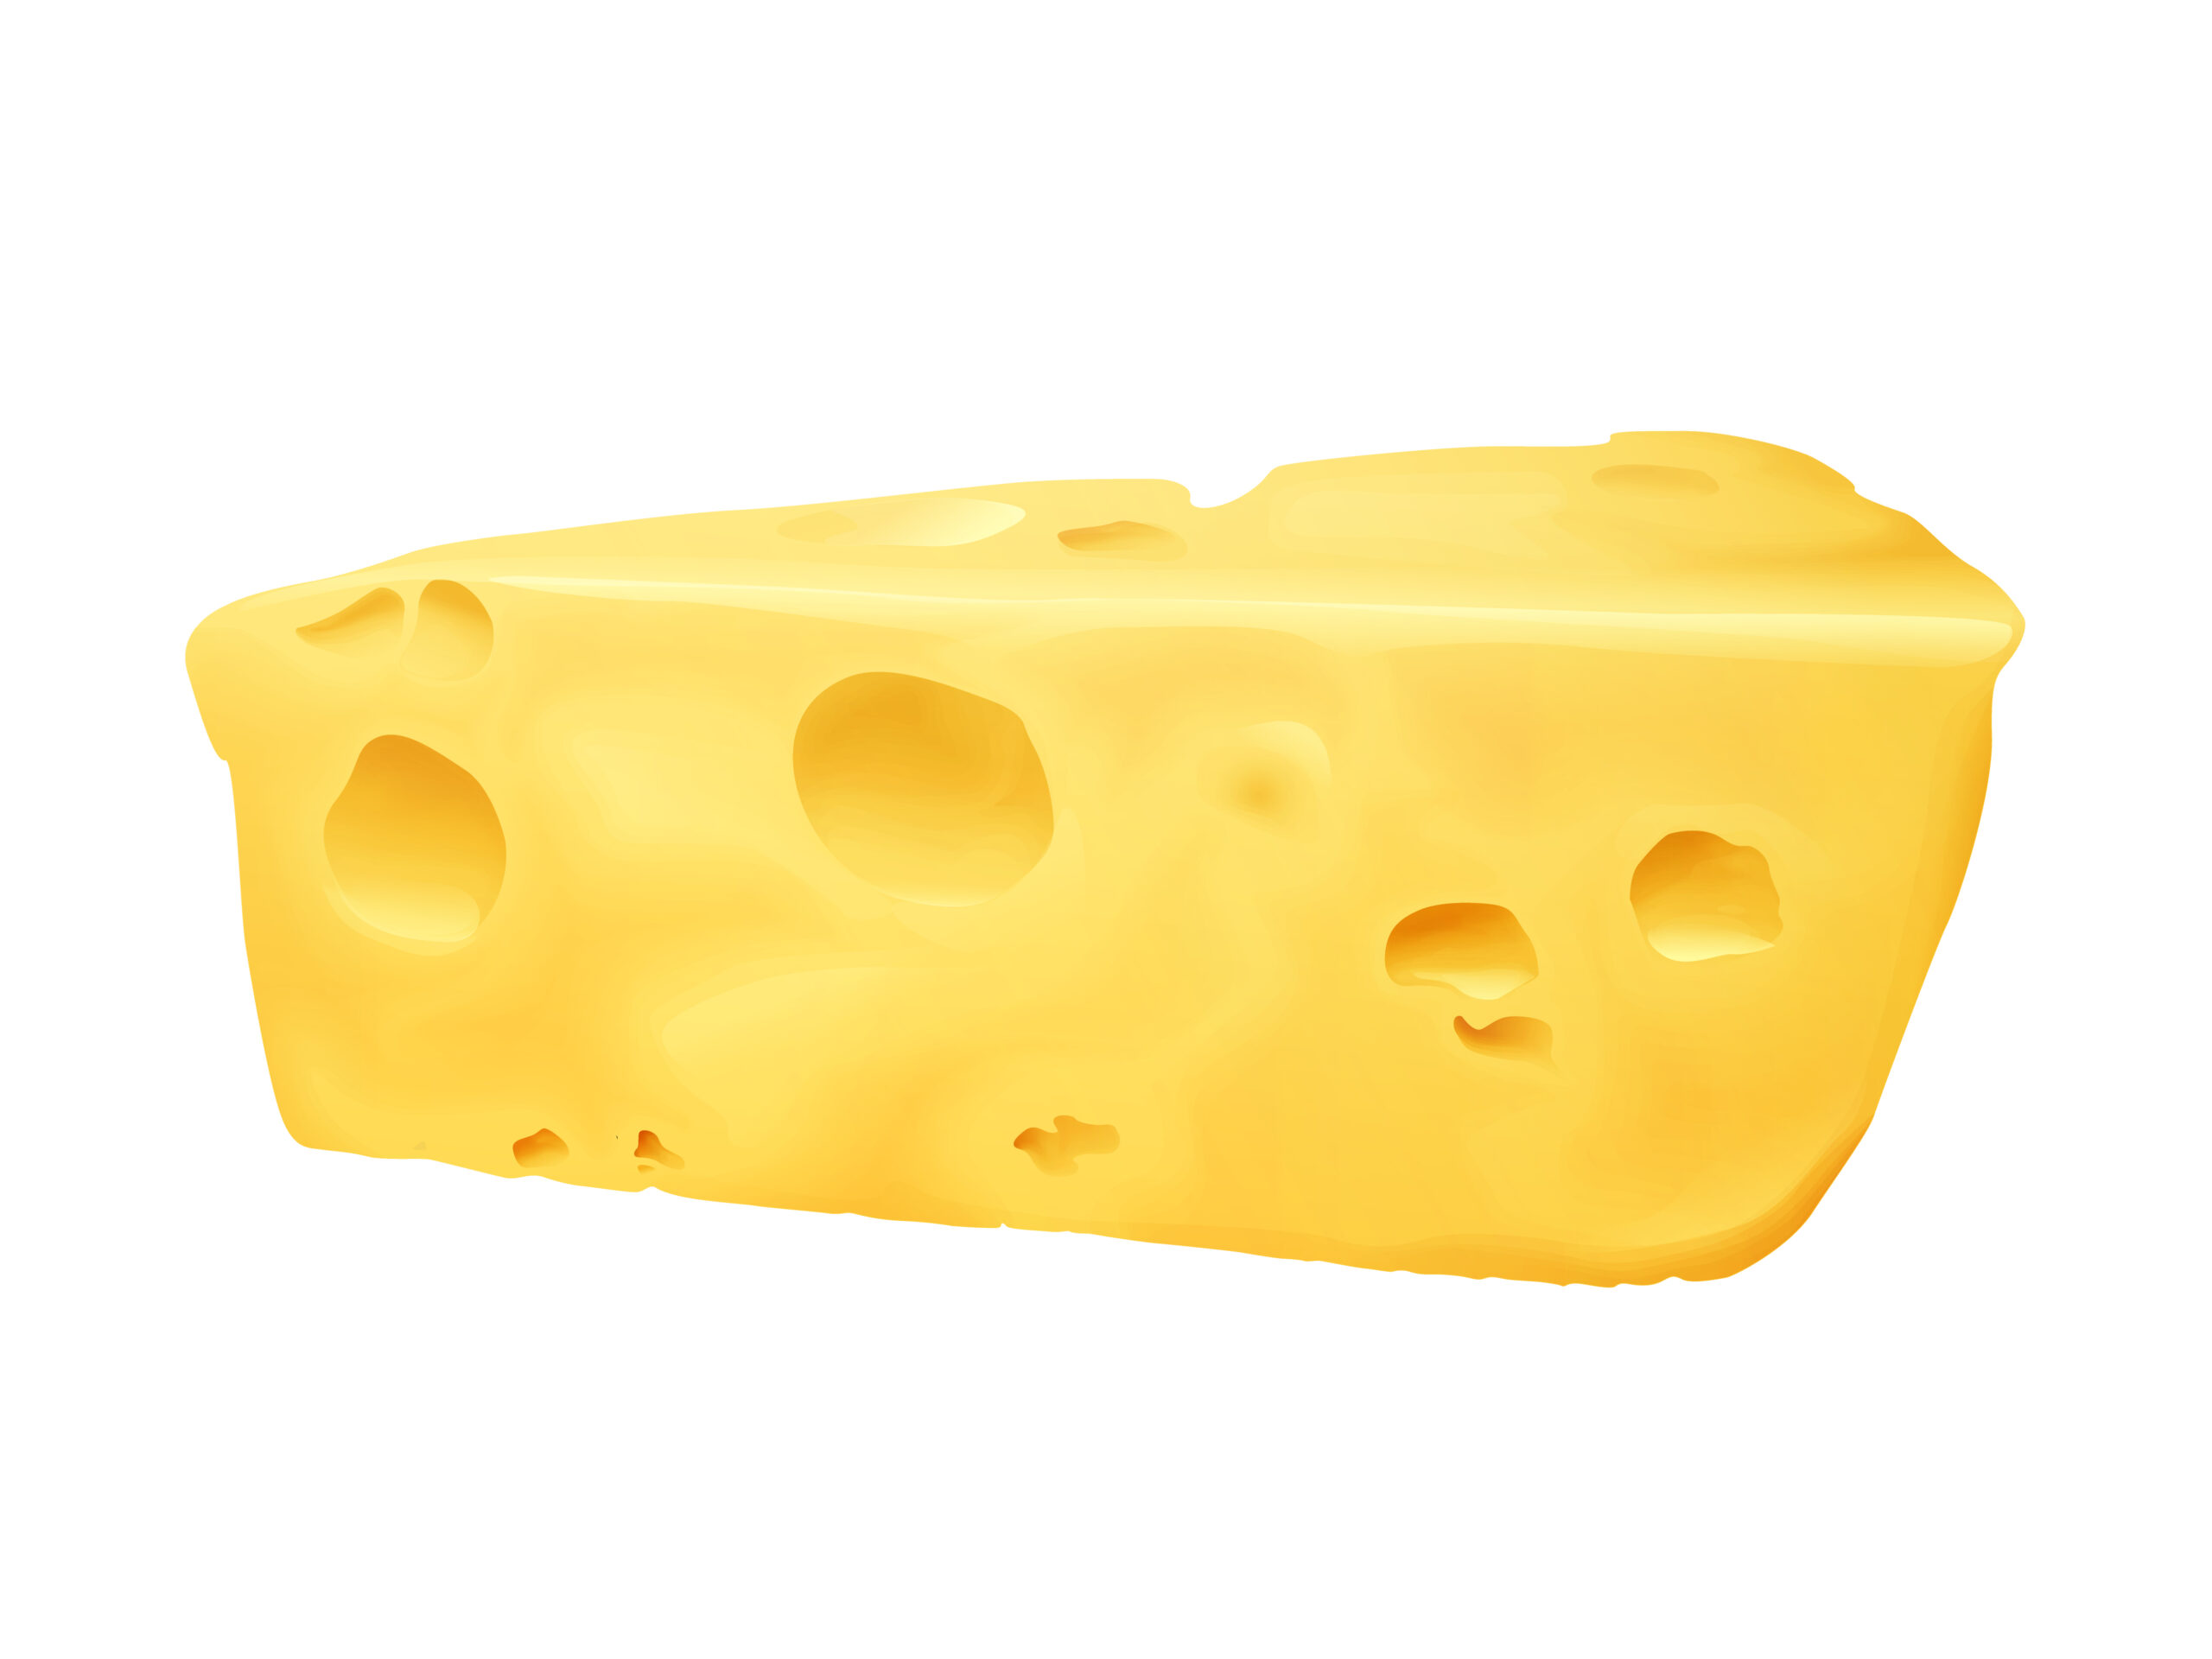 3 чиз. Кусок сыра. 3d сыр. Кусок сыра Эмменталь. Реалистичный сыр.